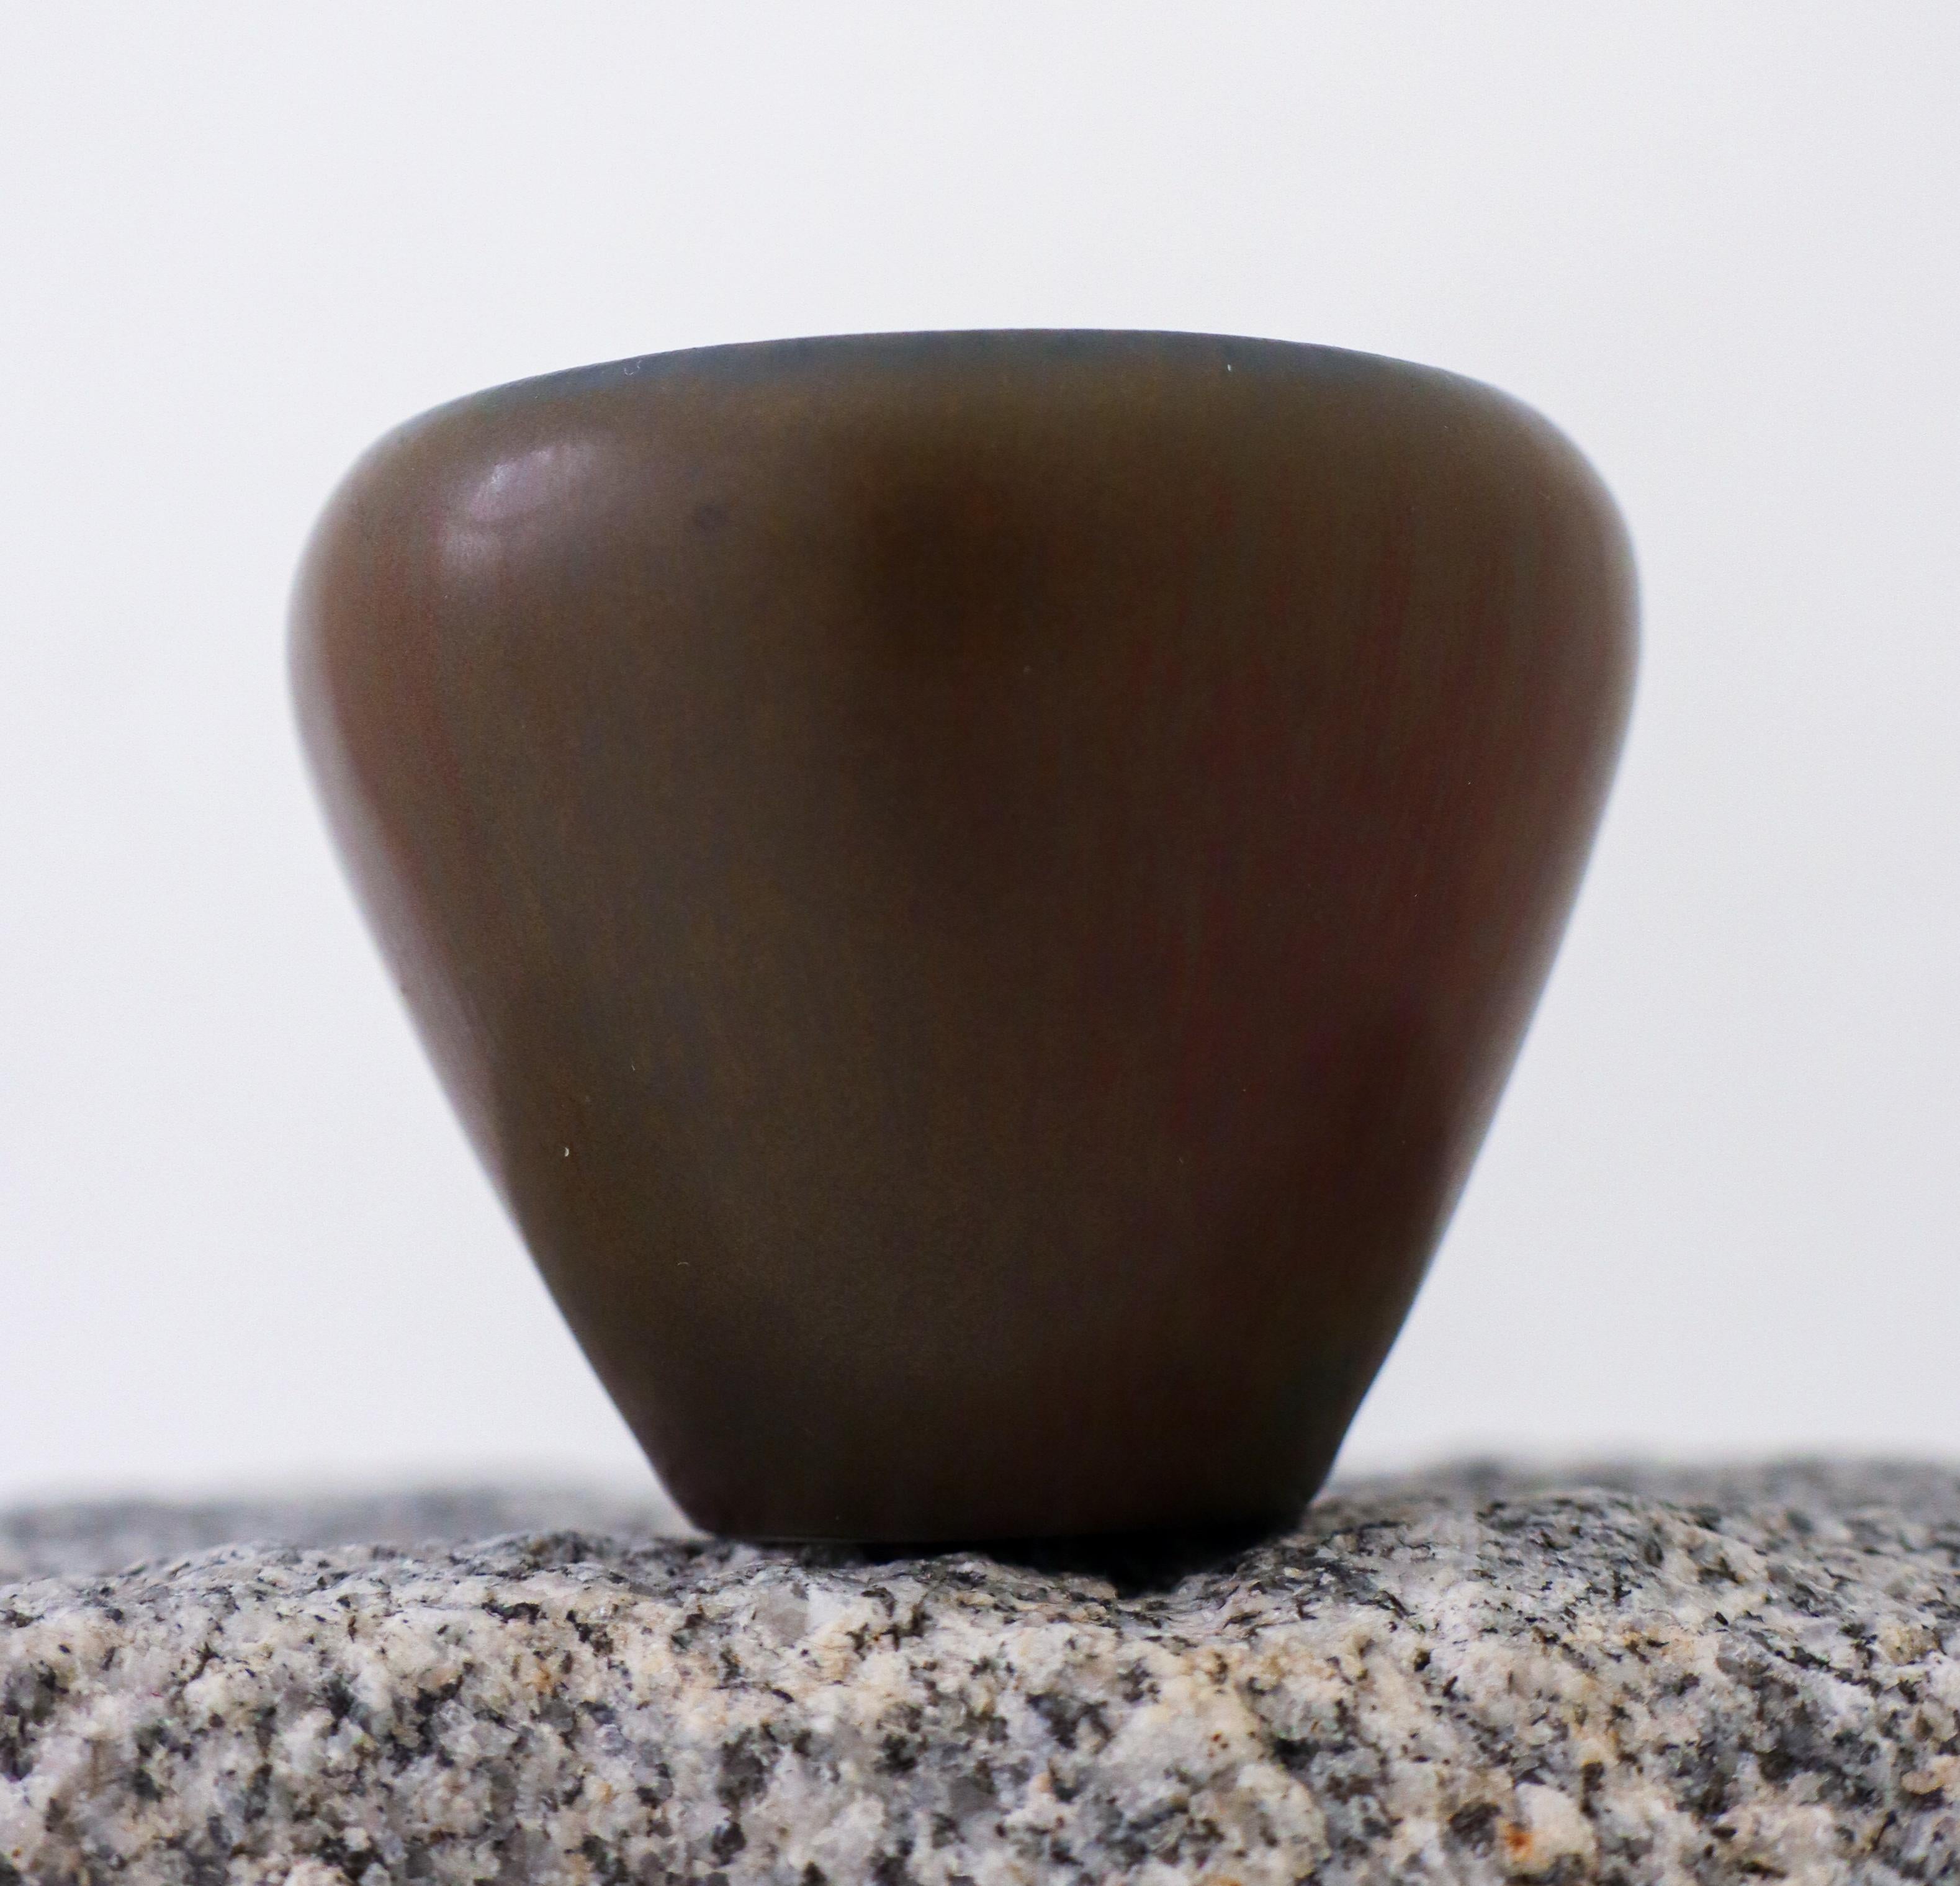 Un petit bol miniature avec une belle glaçure brune en fourrure de har, conçu par Carl-Harry HAR à Rörstrand. Il mesure 7 cm de diamètre et 5,5 cm de haut. Il est en excellent état et marqué comme étant de 1ère qualité

Carl-Harry Stålhane est l'un